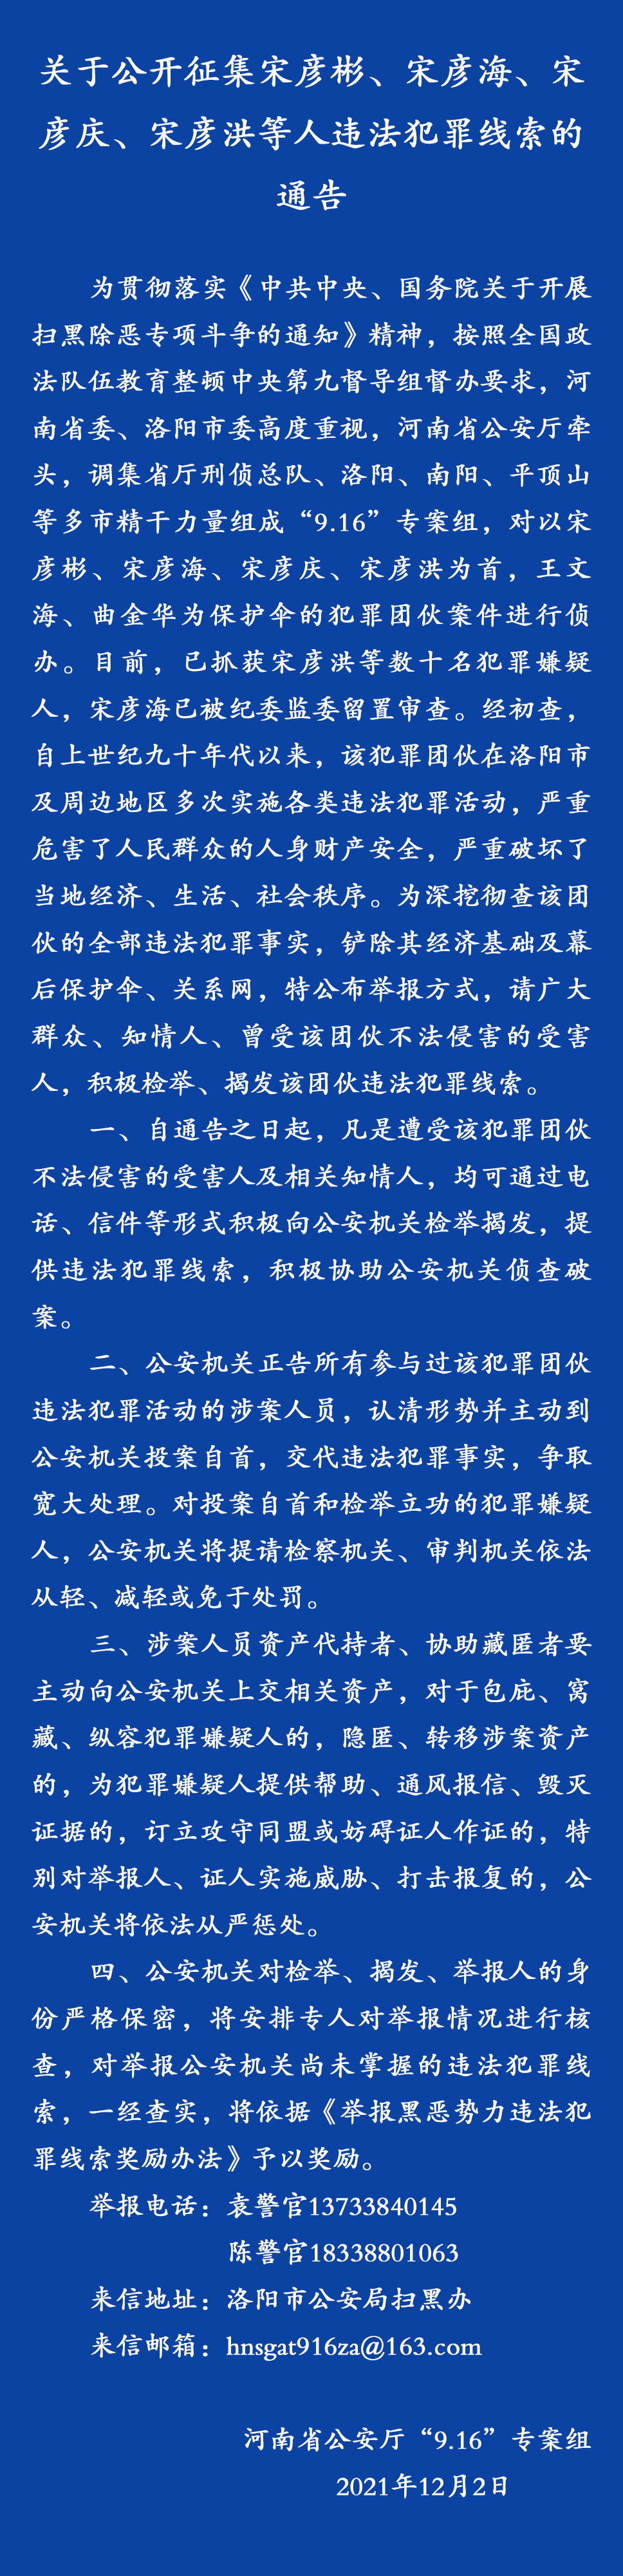 天游平台注册地址洛阳一高级警长被查，举报信称其四兄弟盗窃文物“私藏超过博物馆”